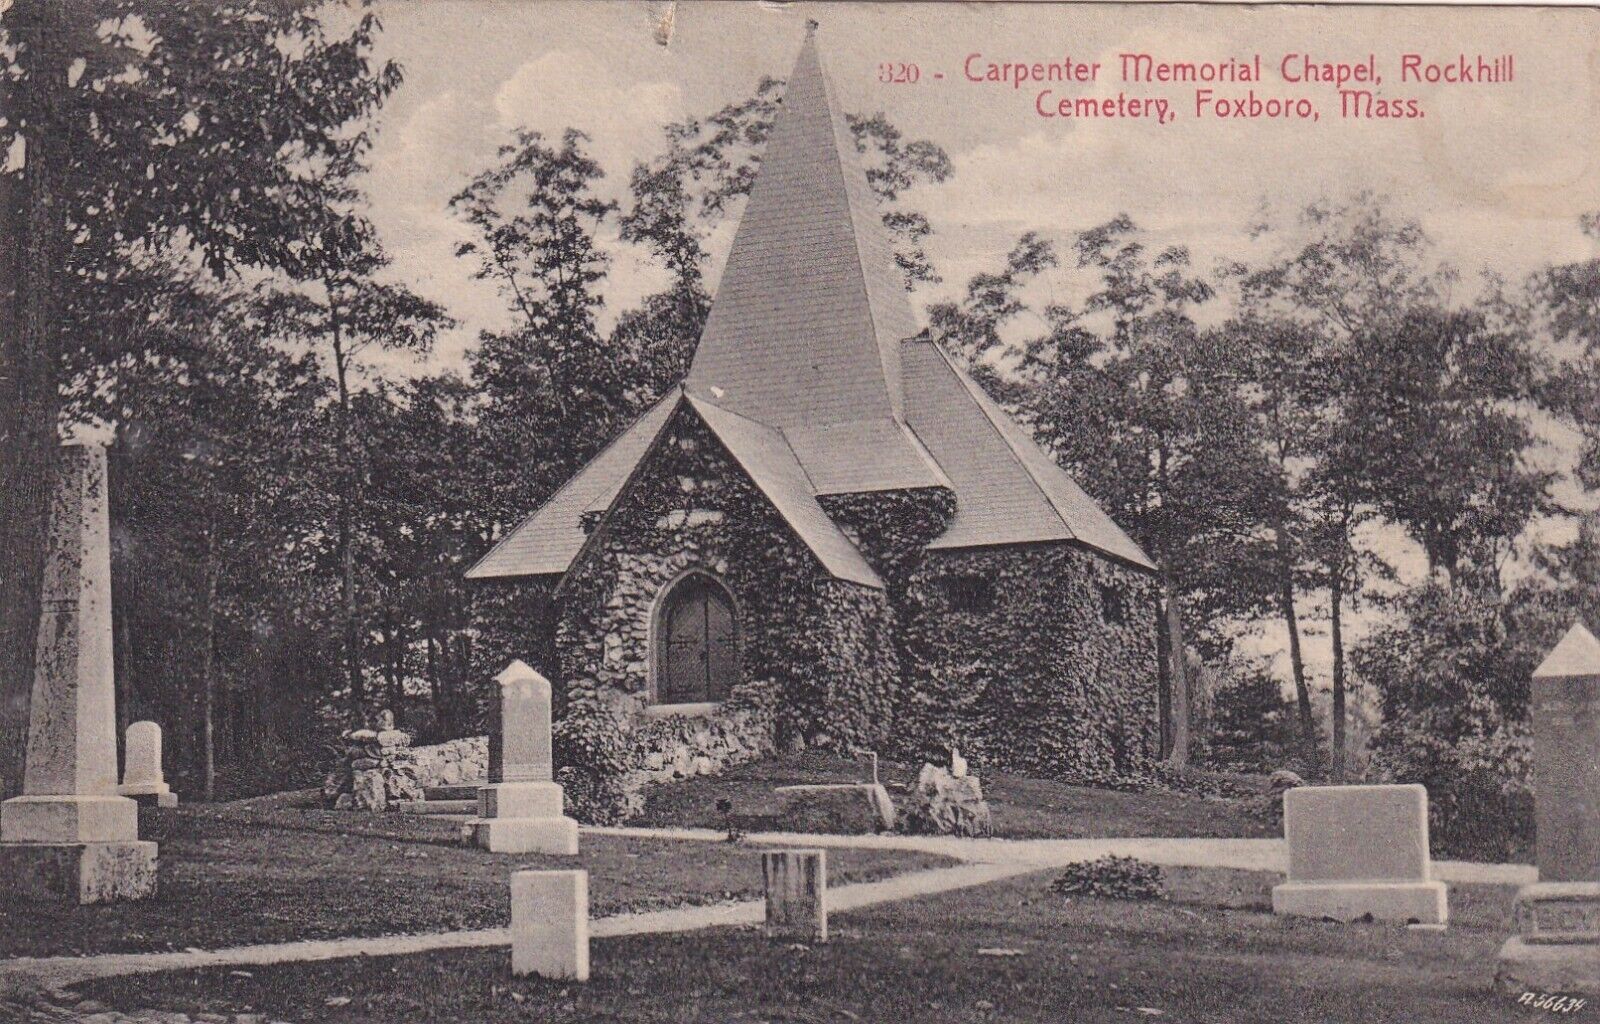 1909 Carpenter Memorial Chapel, Rockhill Cemetery, Foxboro Mass